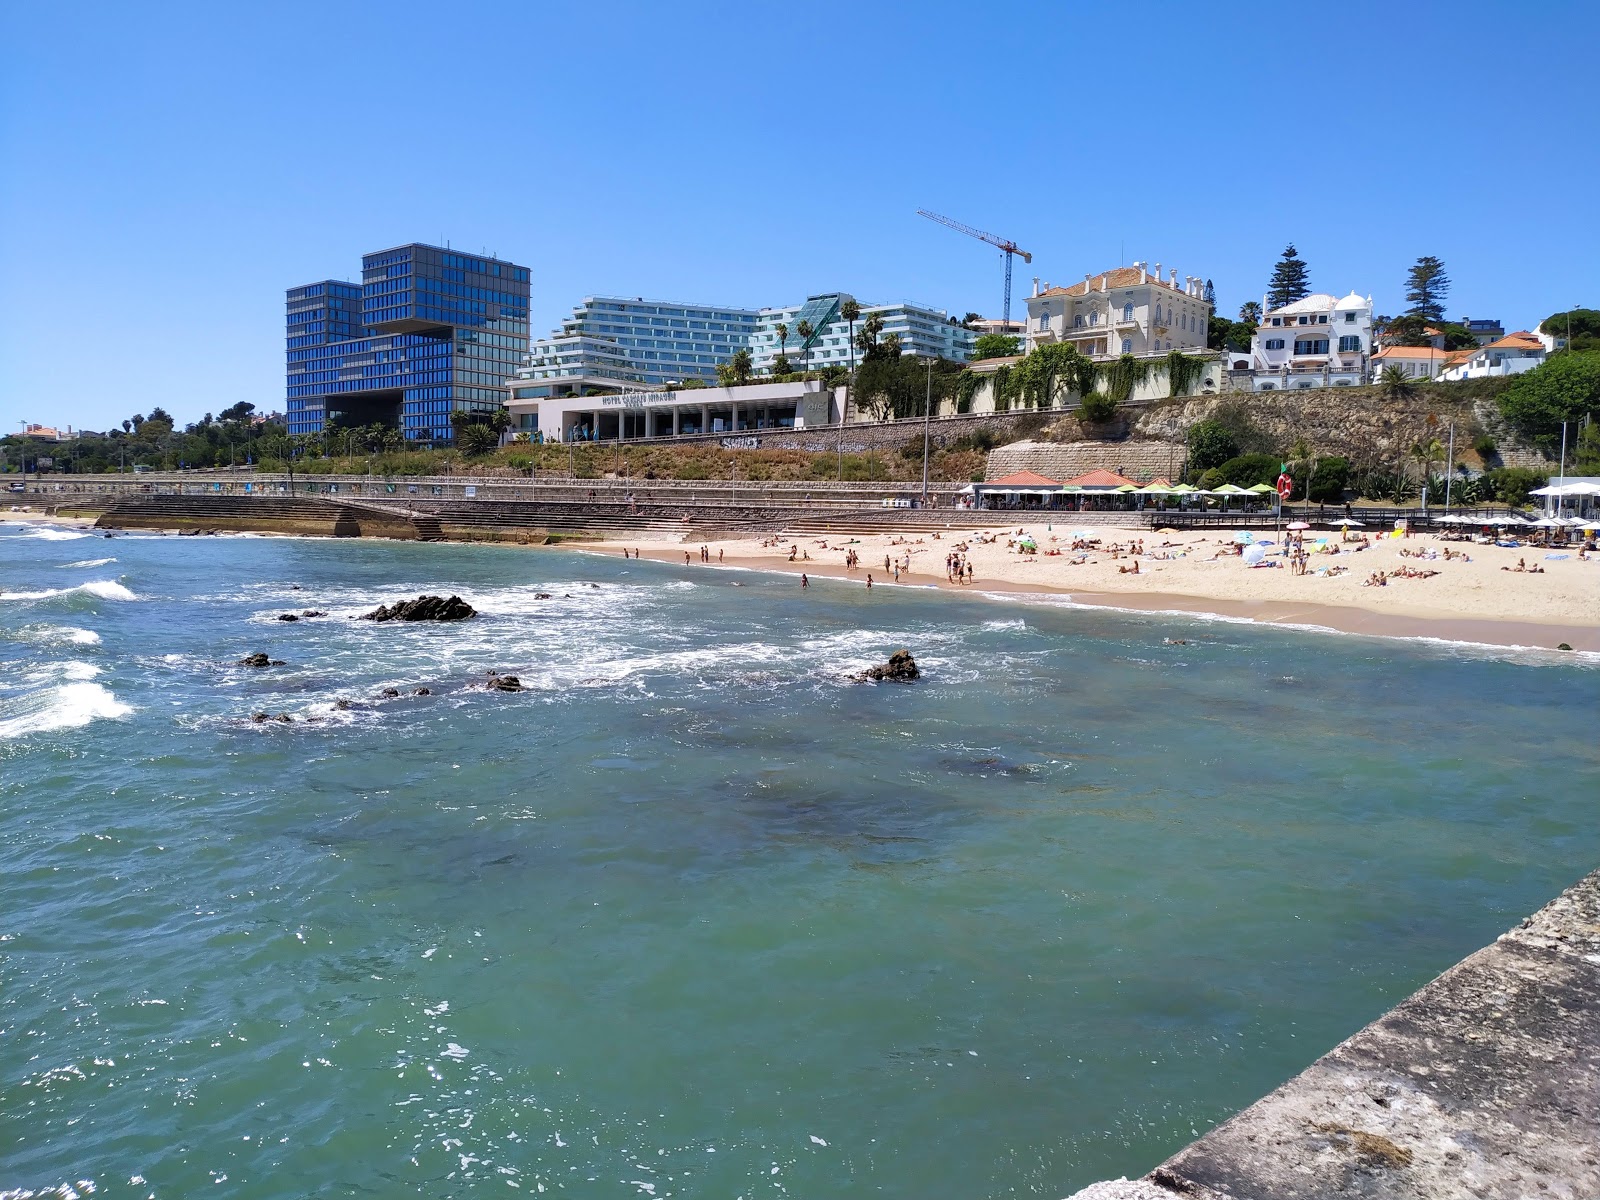 Foto af Praia das Moitas - populært sted blandt afslapningskendere